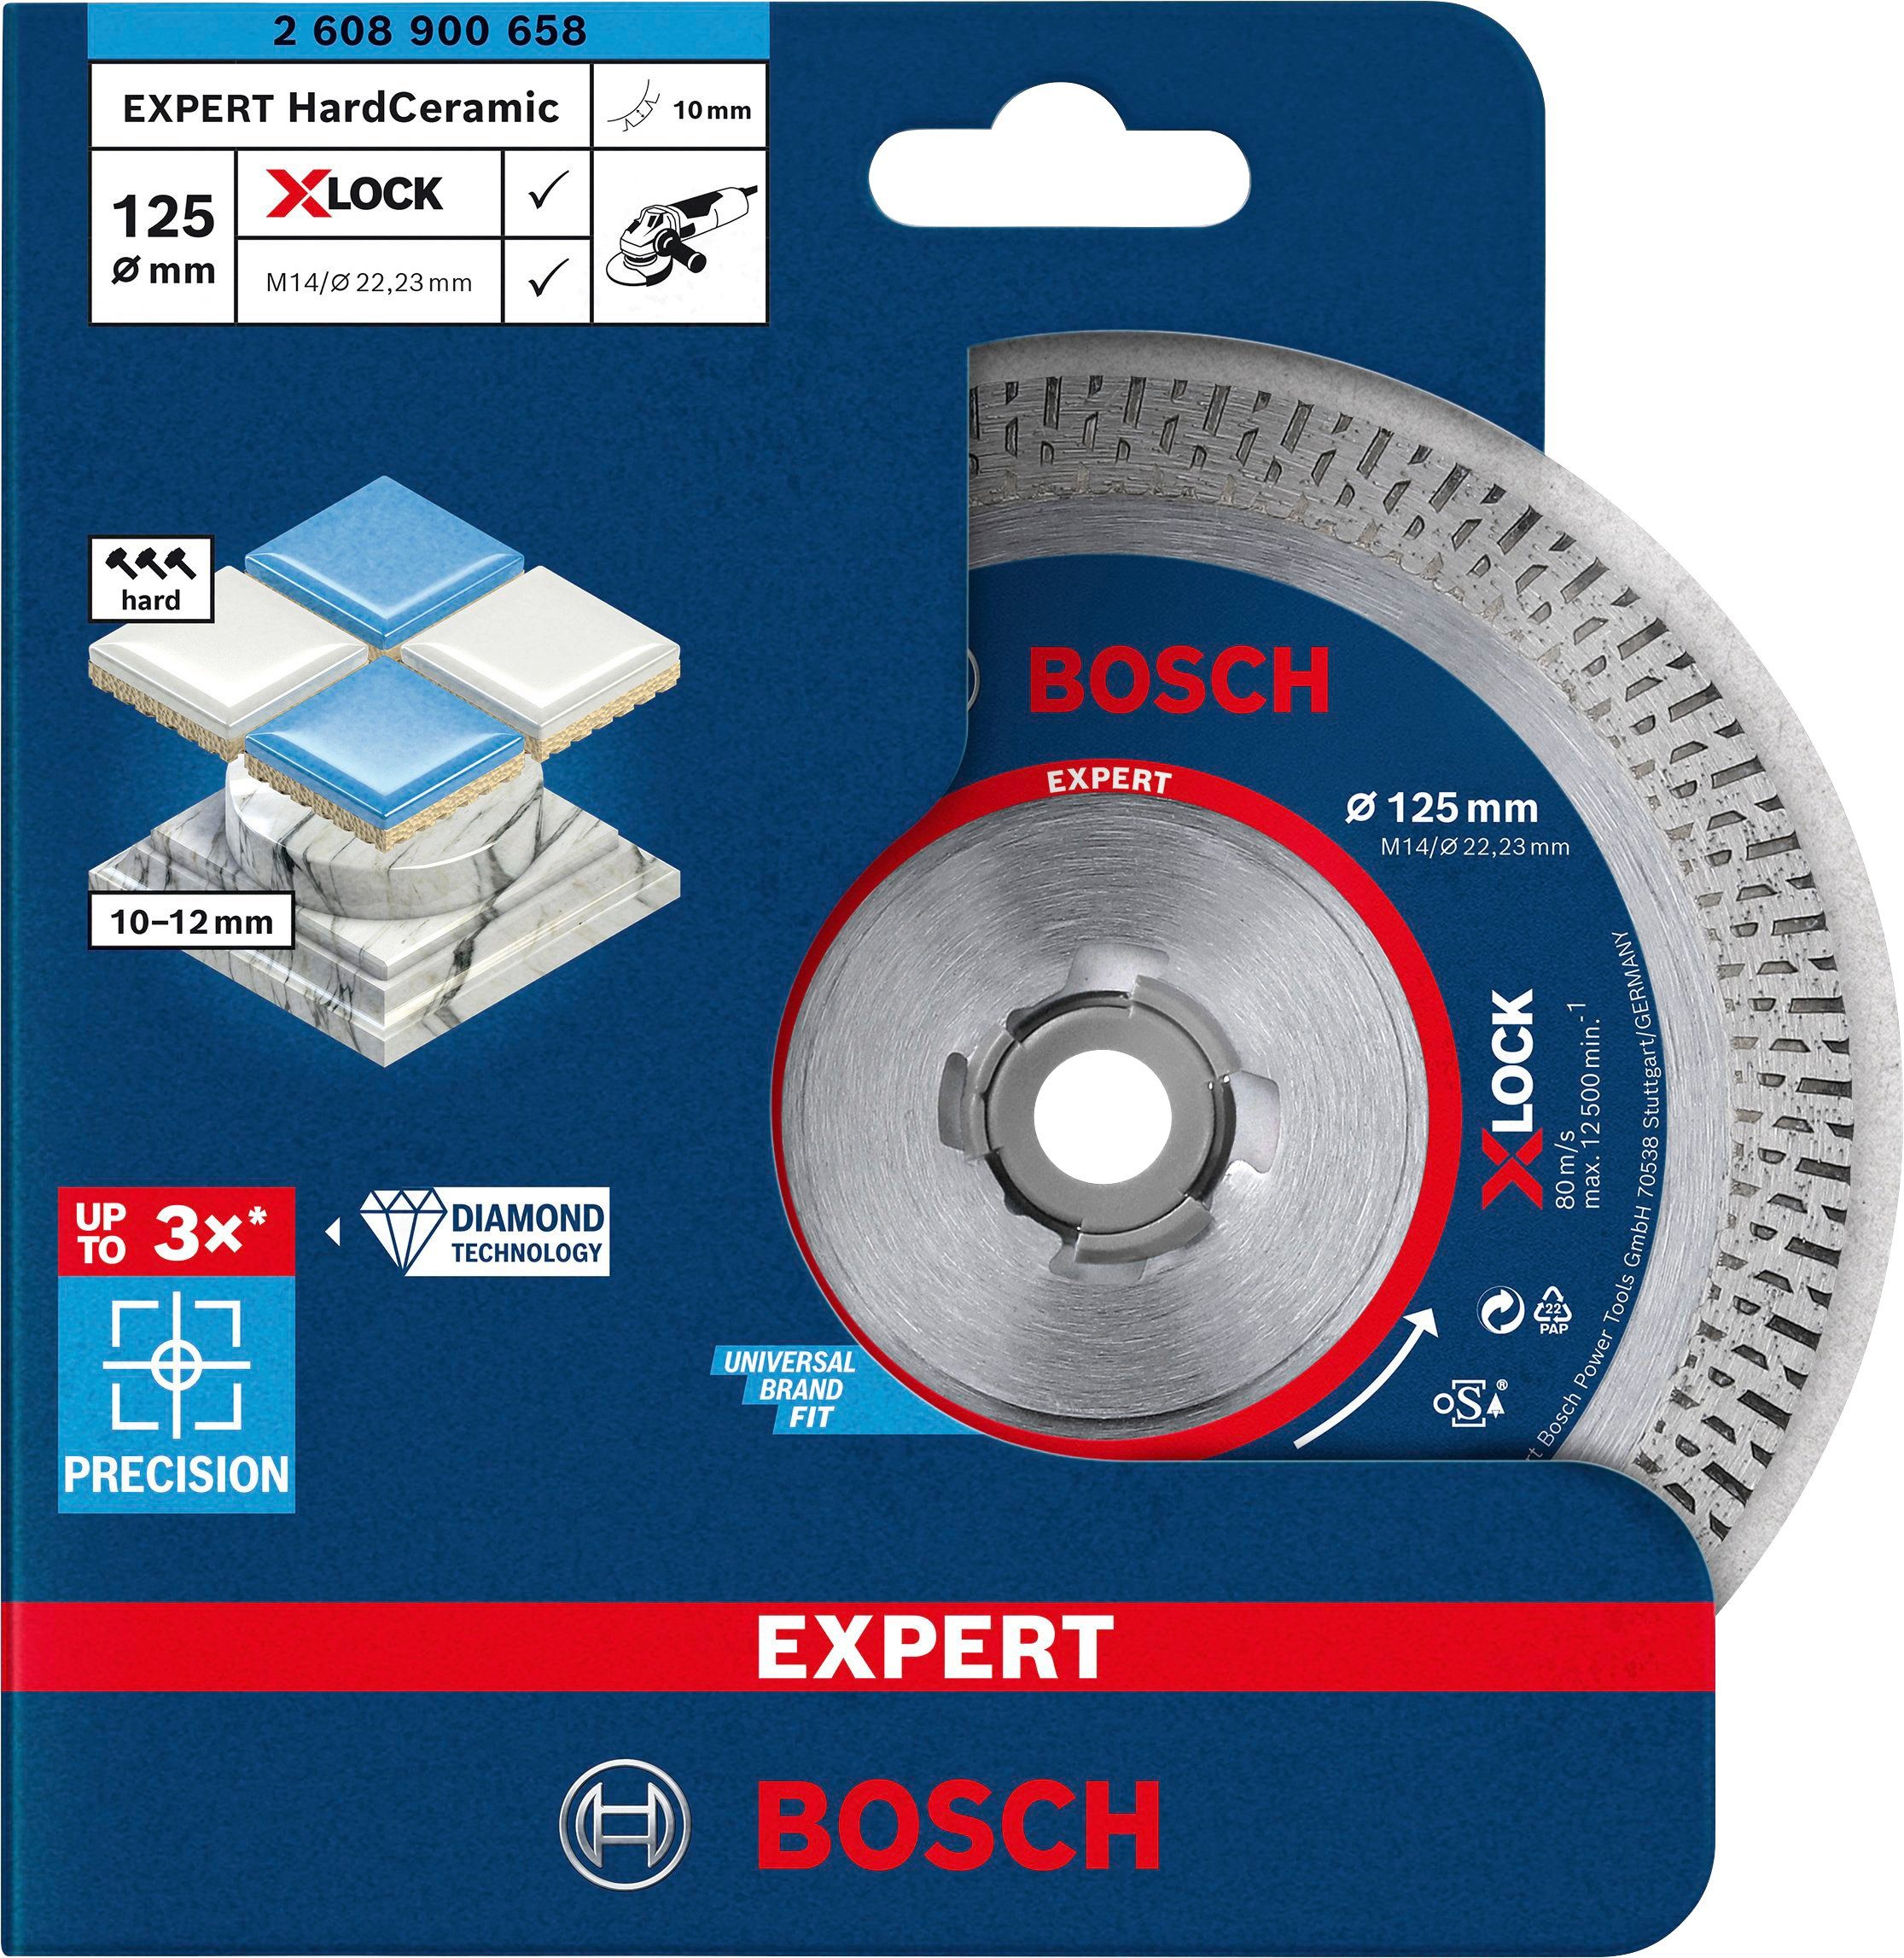 10 mm, HardCeramic x 125 X-LOCK, 22.23 Professional x Ø Expert 1.4 mm Bosch Diamanttrennscheibe